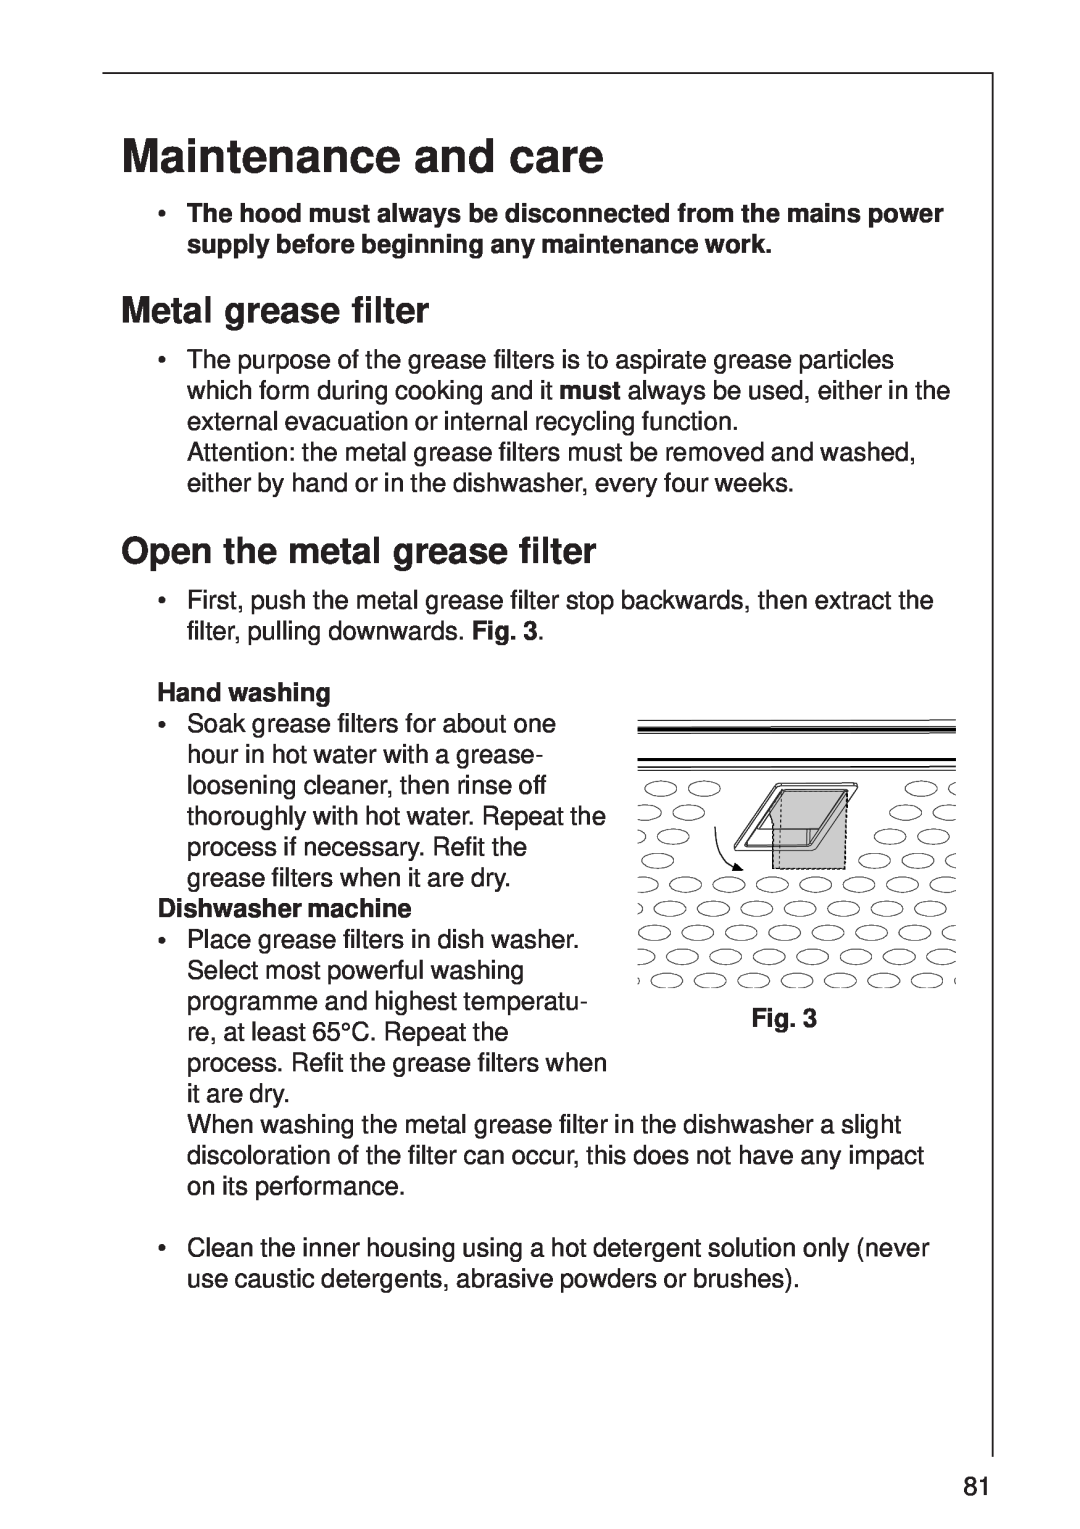 AEG DI 8610 manual Maintenance and care, Metal grease filter, Open the metal grease filter 